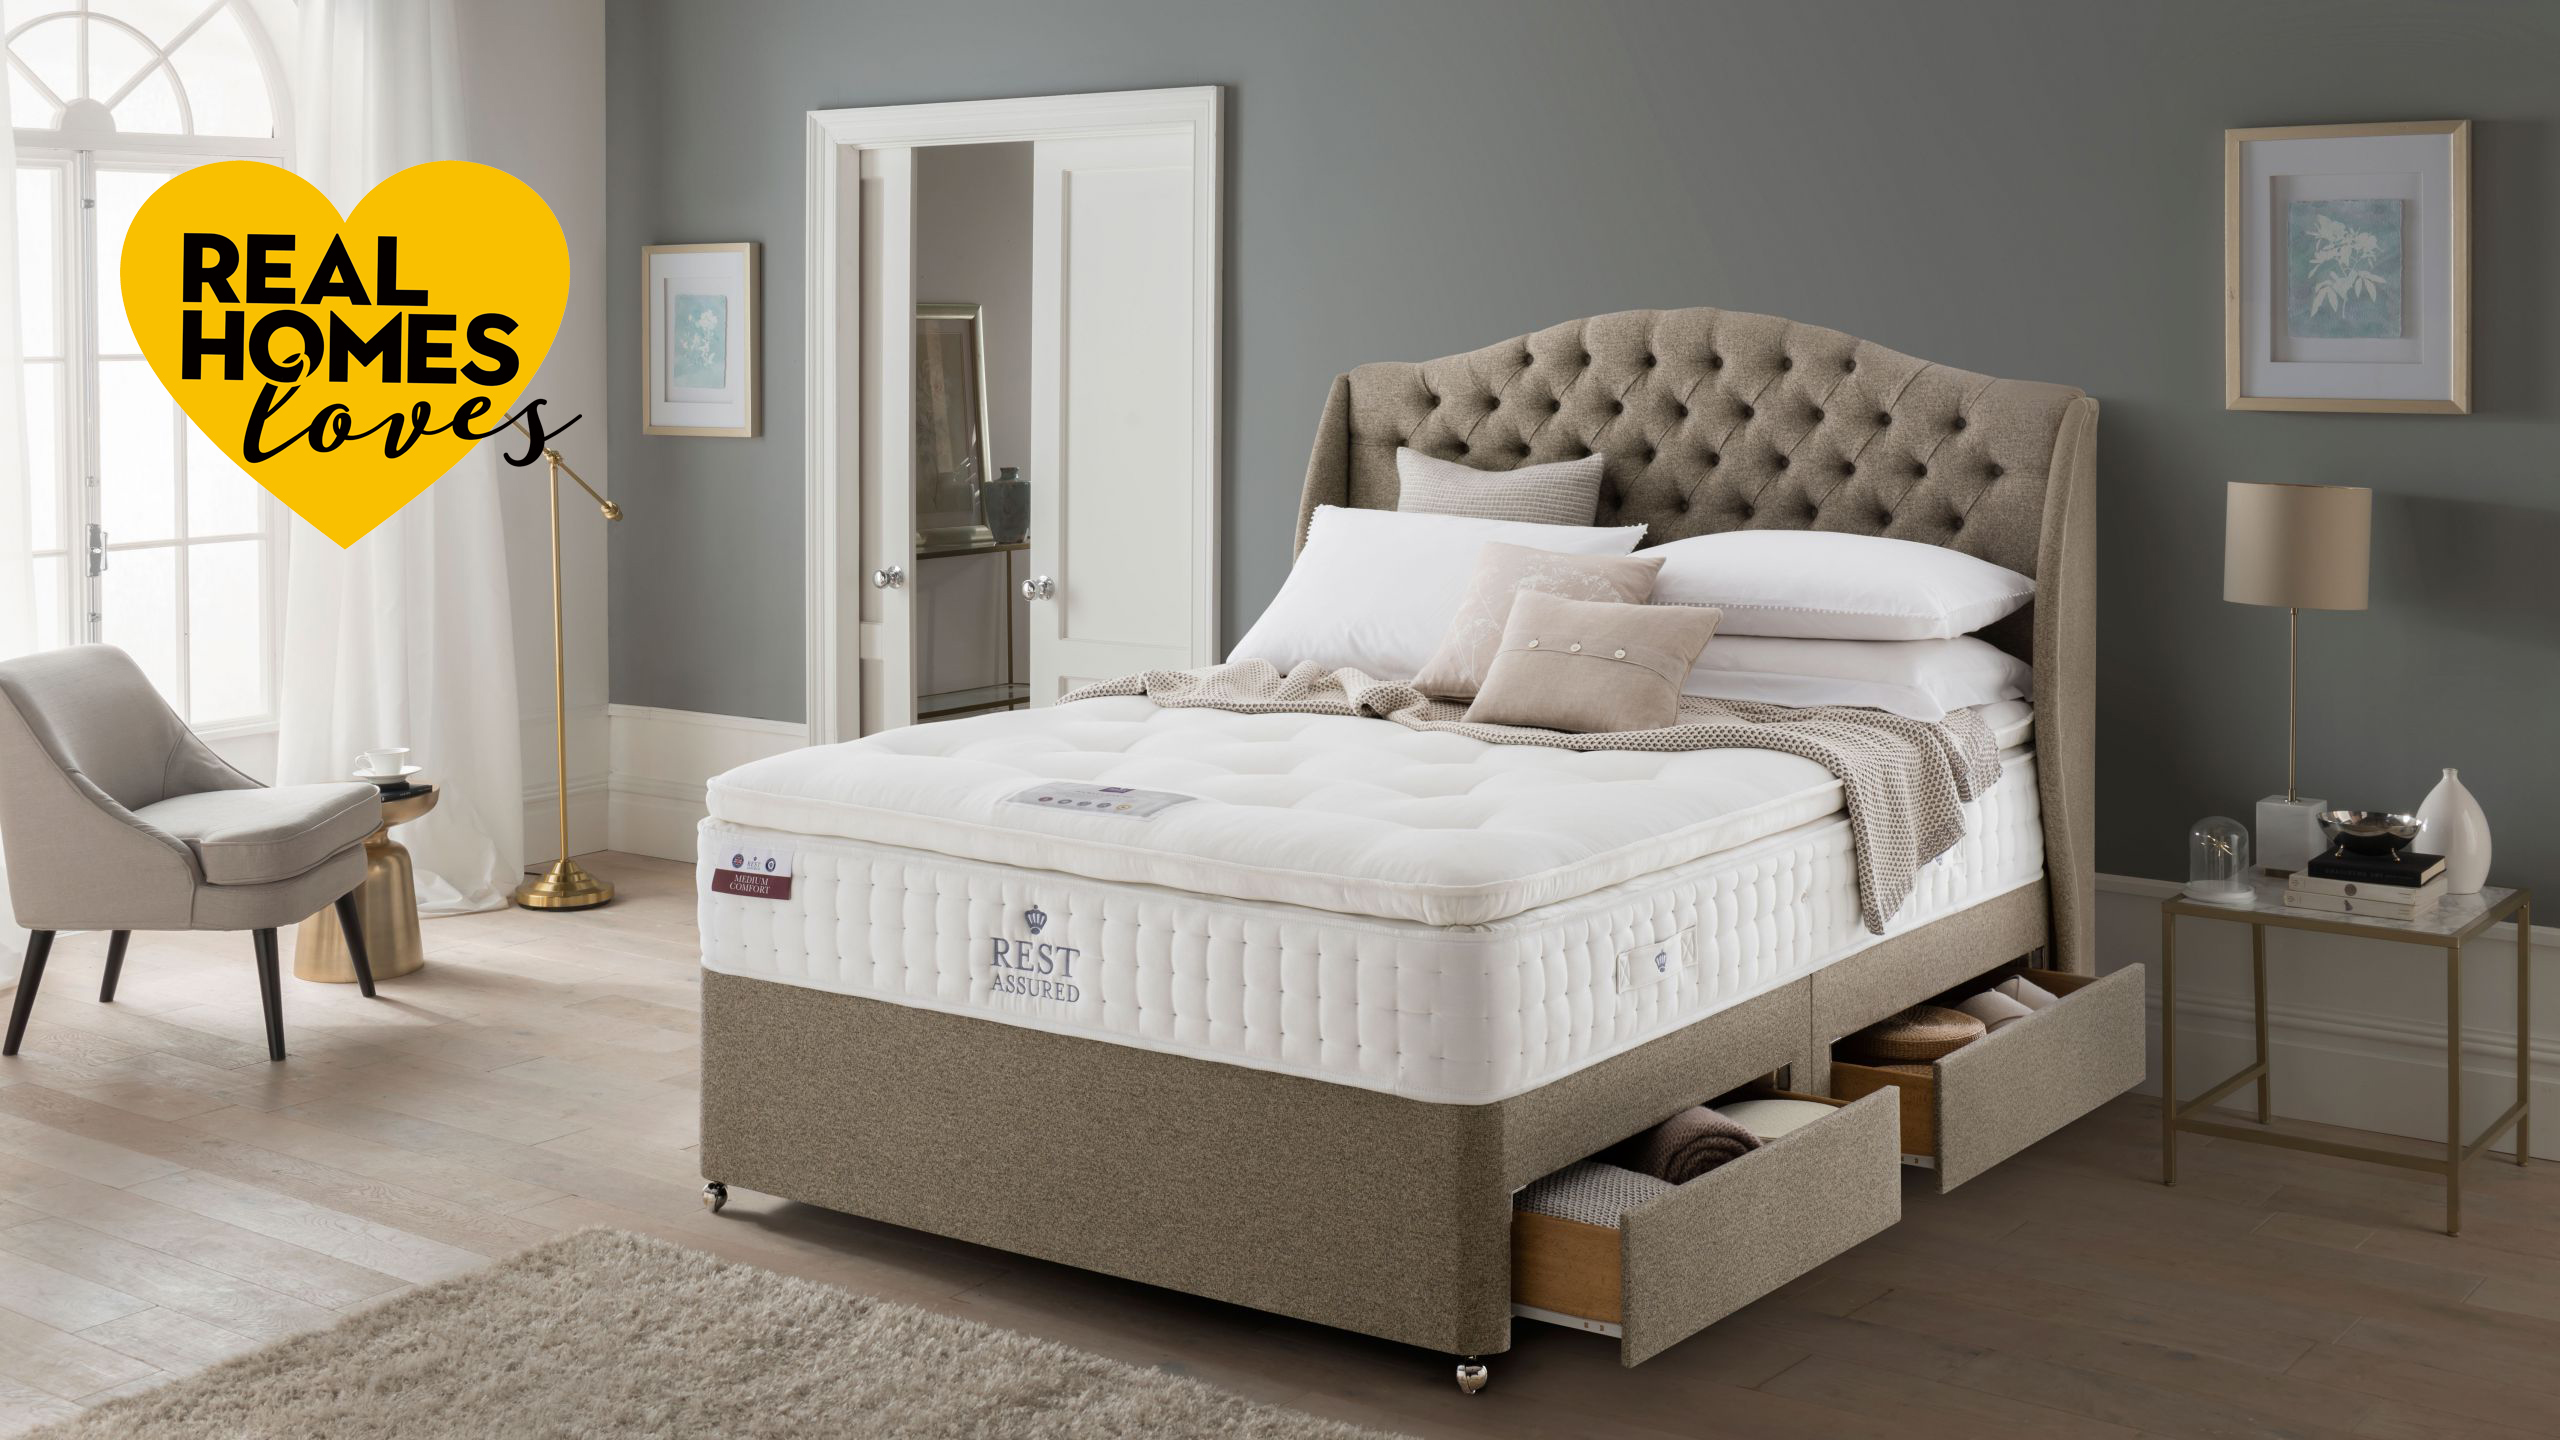 rest assured knowlton mattress reviews